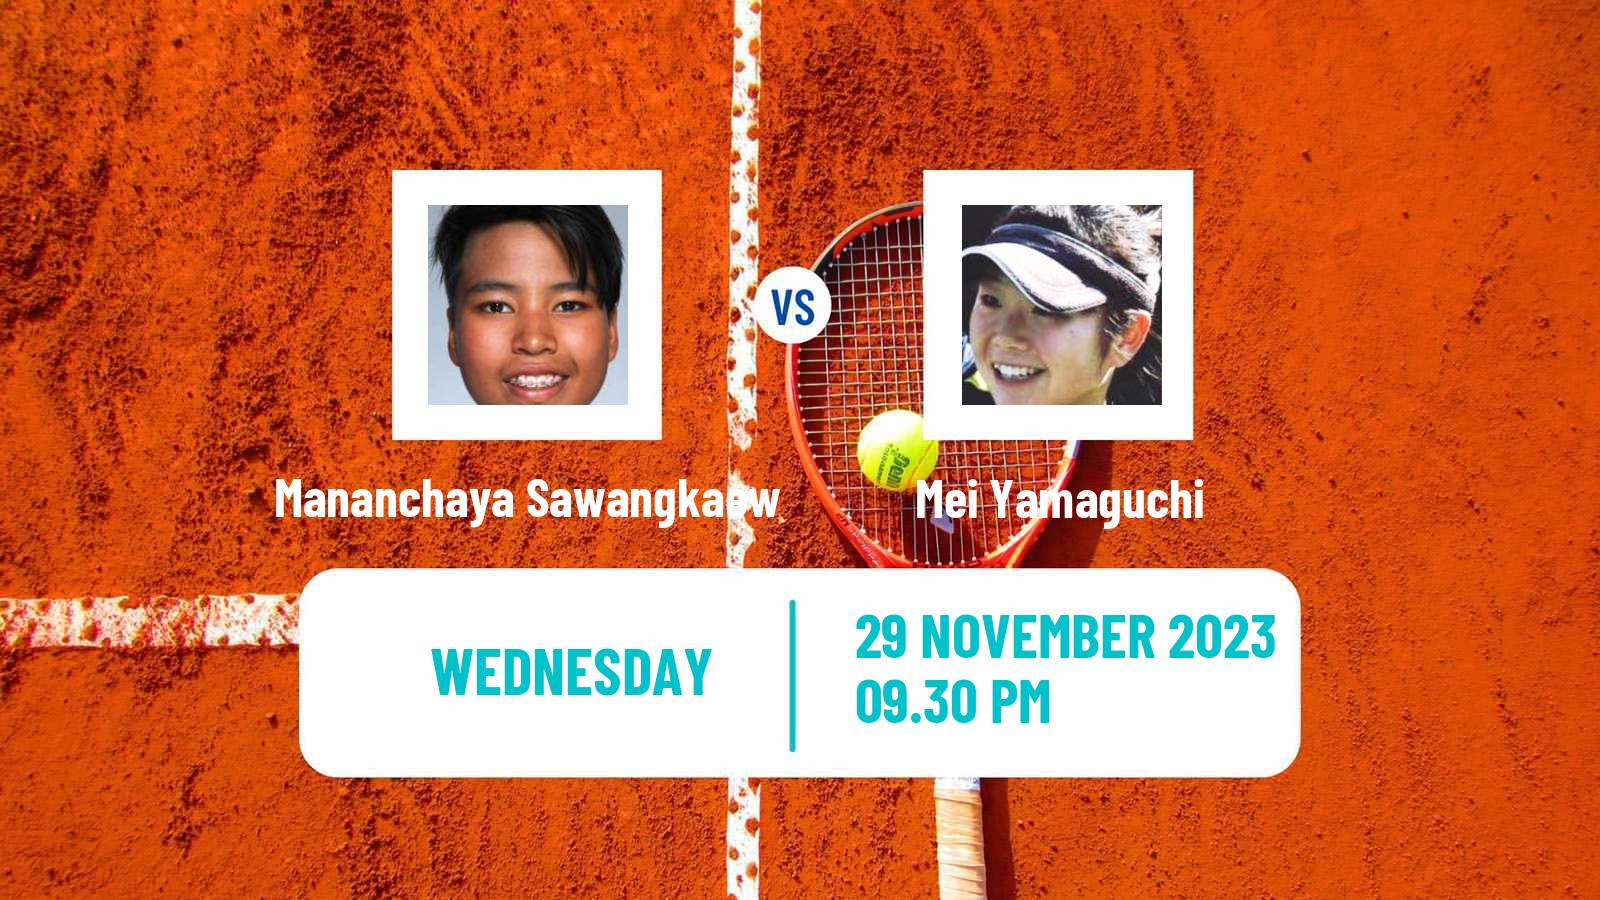 Tennis ITF W40 Yokohama Women Mananchaya Sawangkaew - Mei Yamaguchi